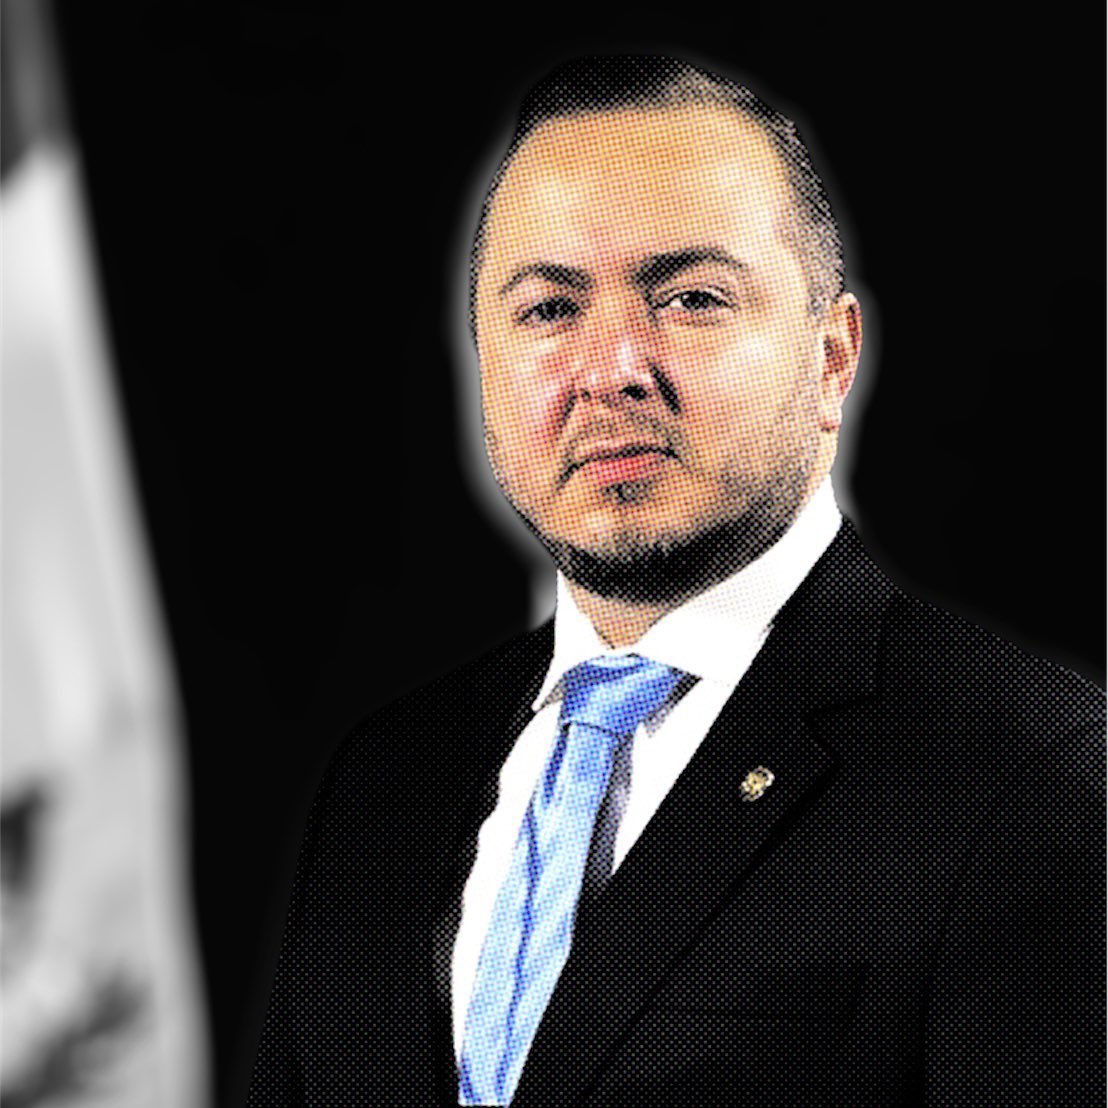 Parte 2 #PasaportesDiplomáticos José Ubico, exdiputado y quien actualmente tiene un proceso de extradición en EE.UU. por narcotráfico, tiene un pasaporte diplomático y el @GuatemalaGob no se lo quita Investigación junto a @Sonny_Figueroa en @VoxPopuliGuate ▶️…